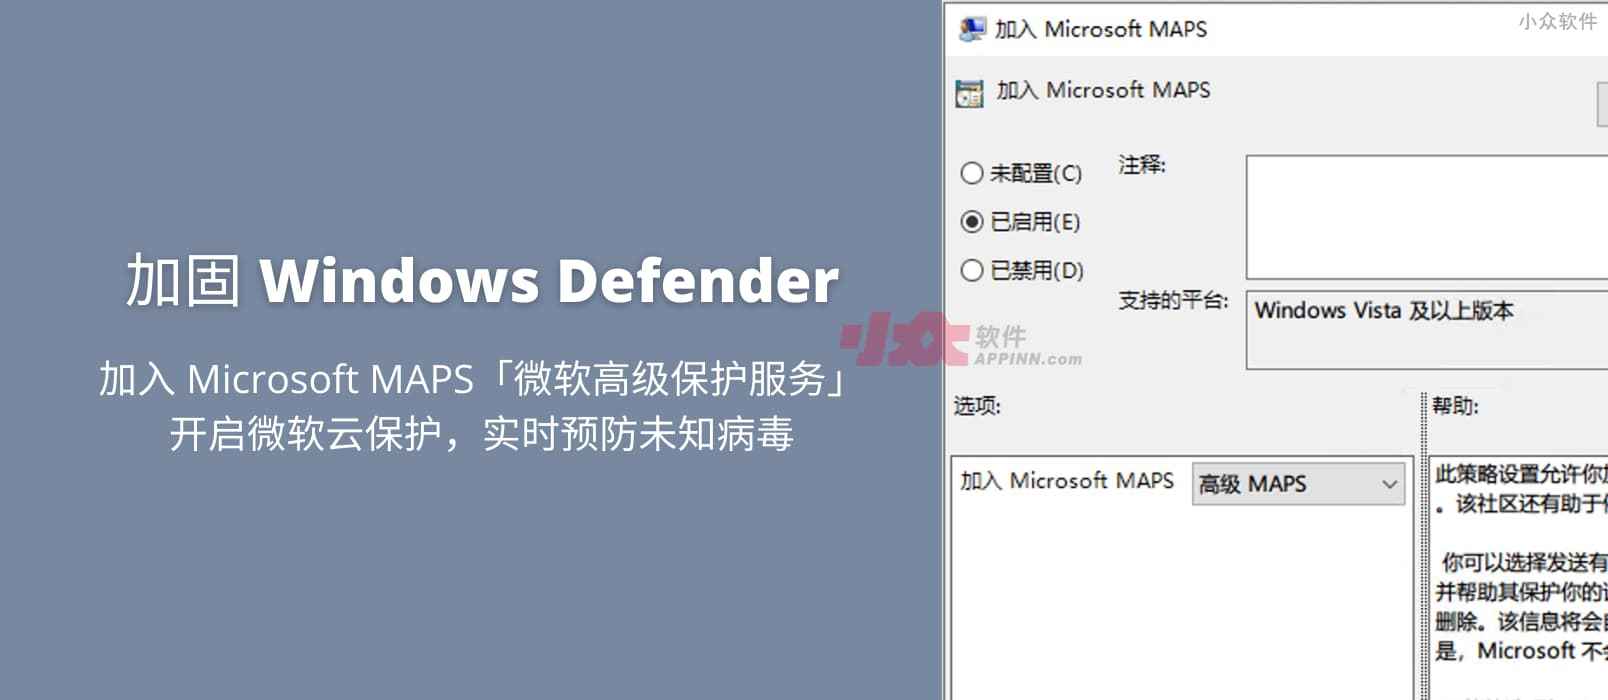 加固 Windows Defender ，开启微软云保护，利用「微软高级保护服务」（MAPS）来实时预防未知病毒